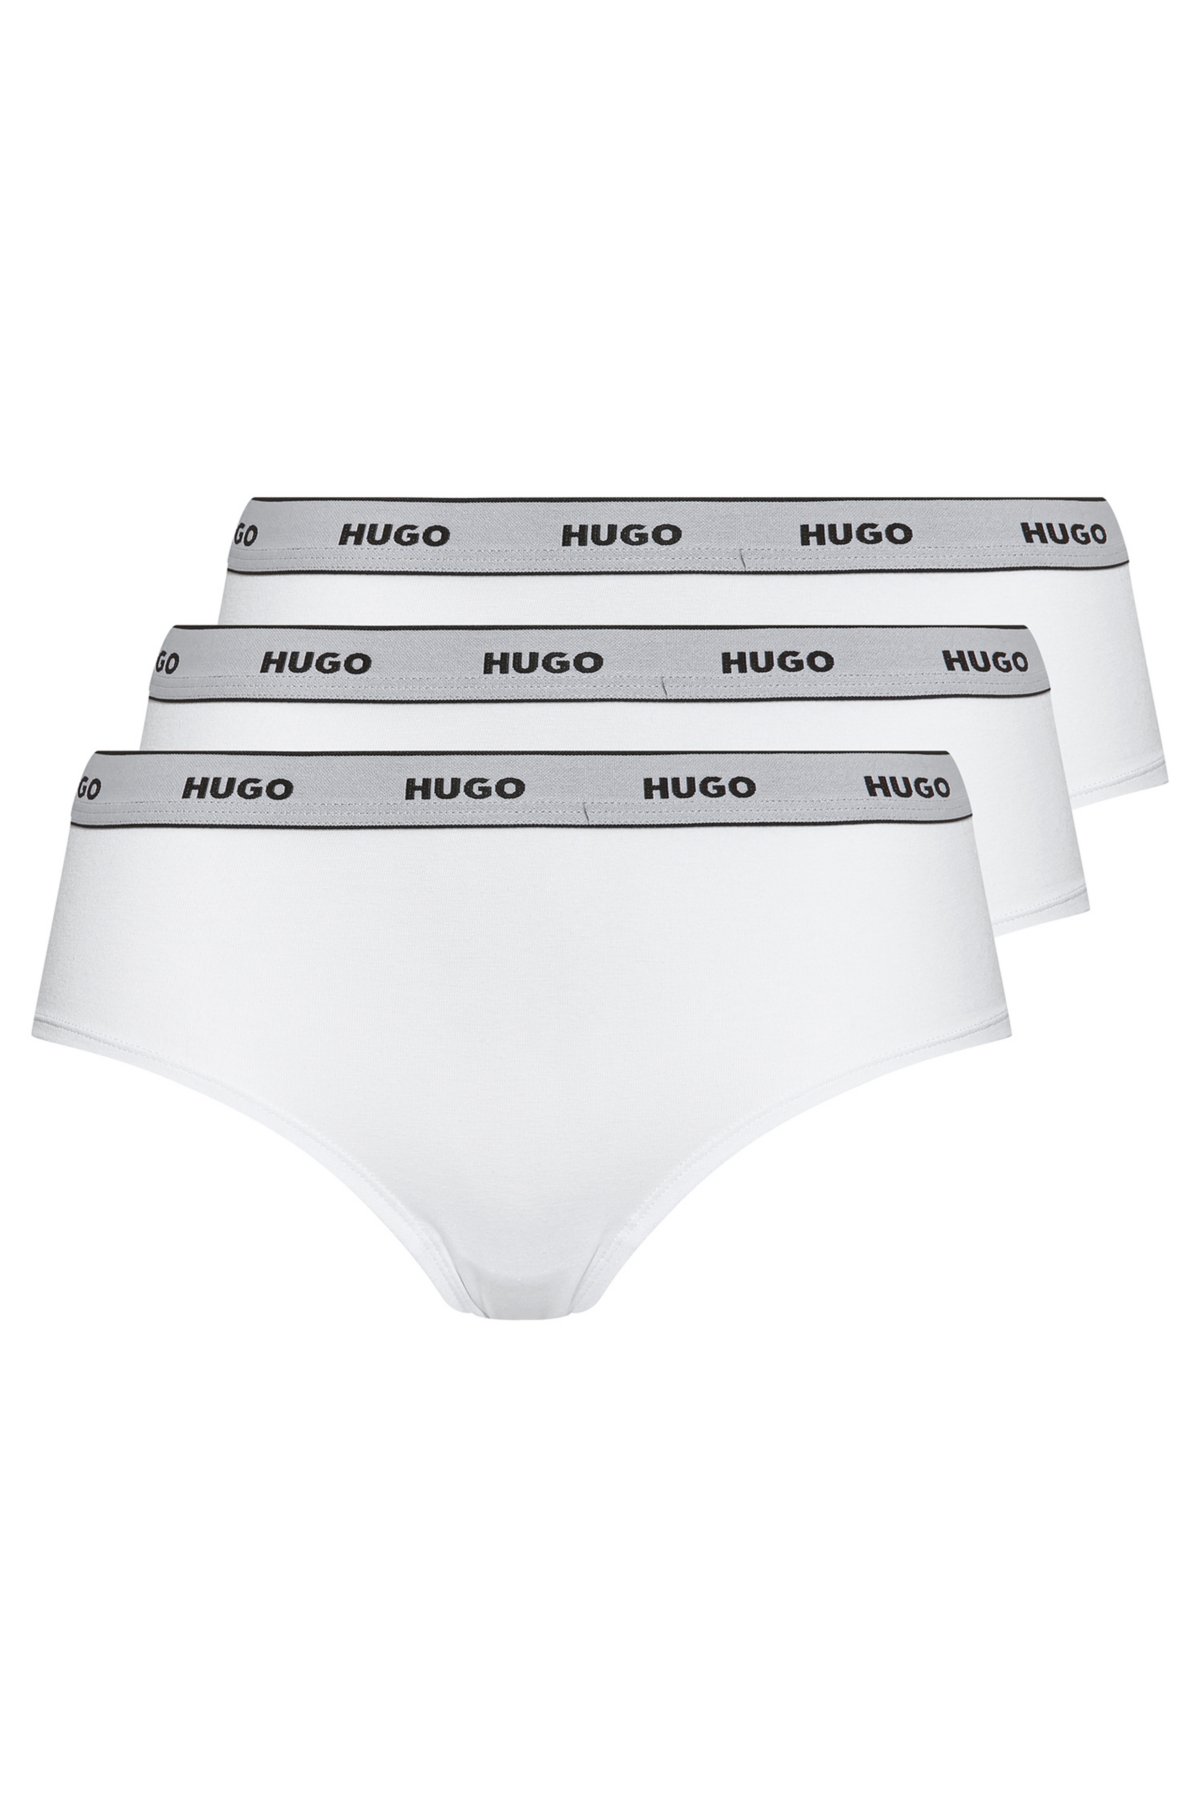 3-pack Hip Hugger Panties (3111122)